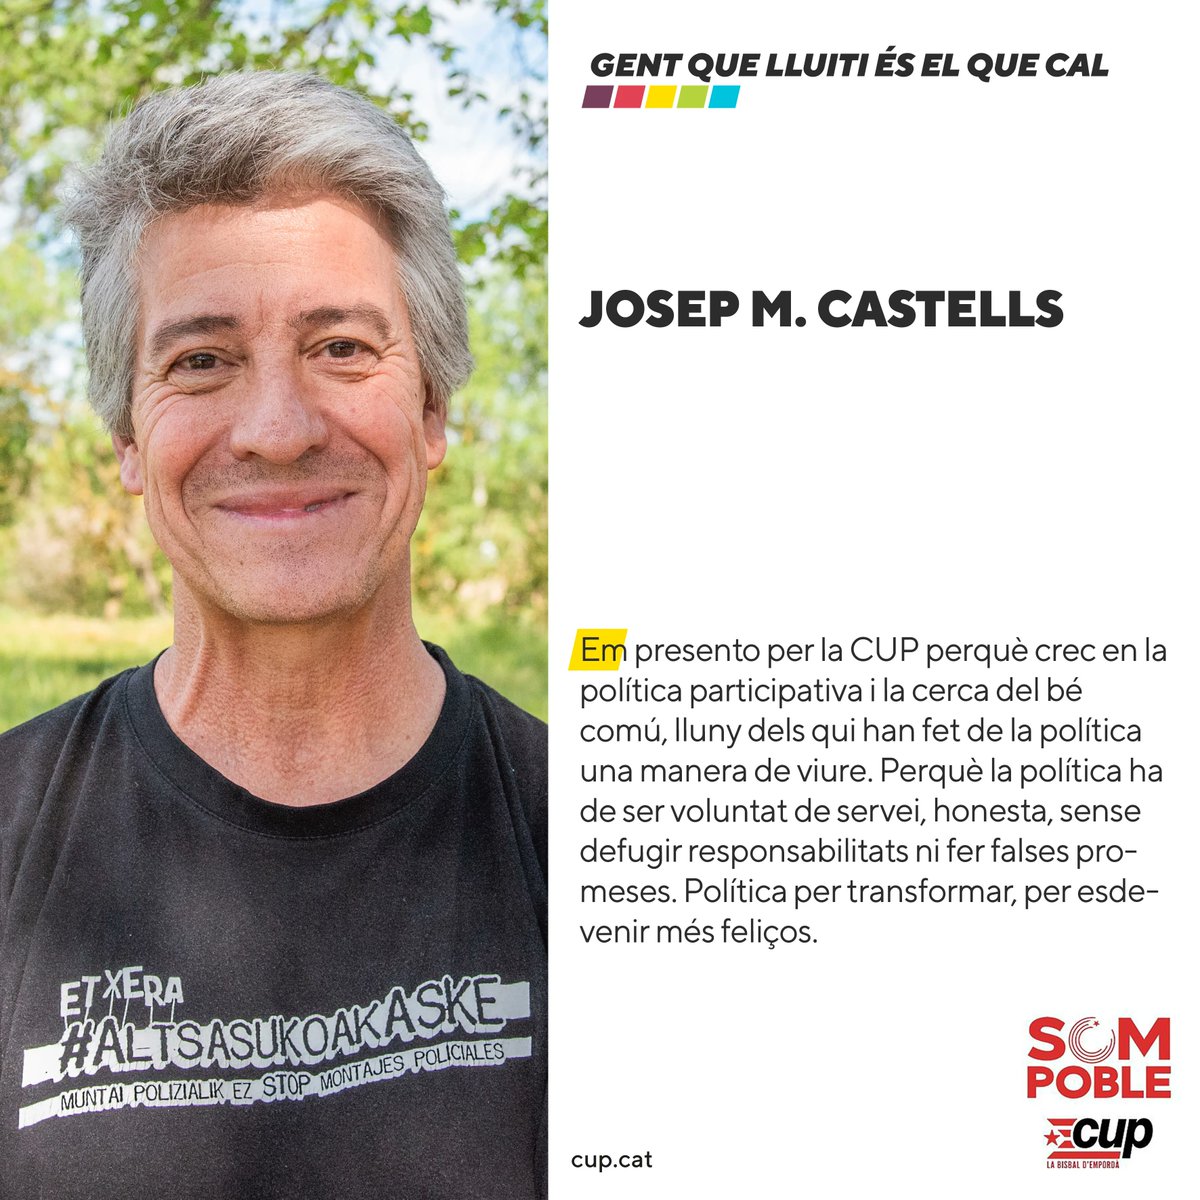 8️⃣ Josep M. Castells 🪴 

#GentQueLluiti